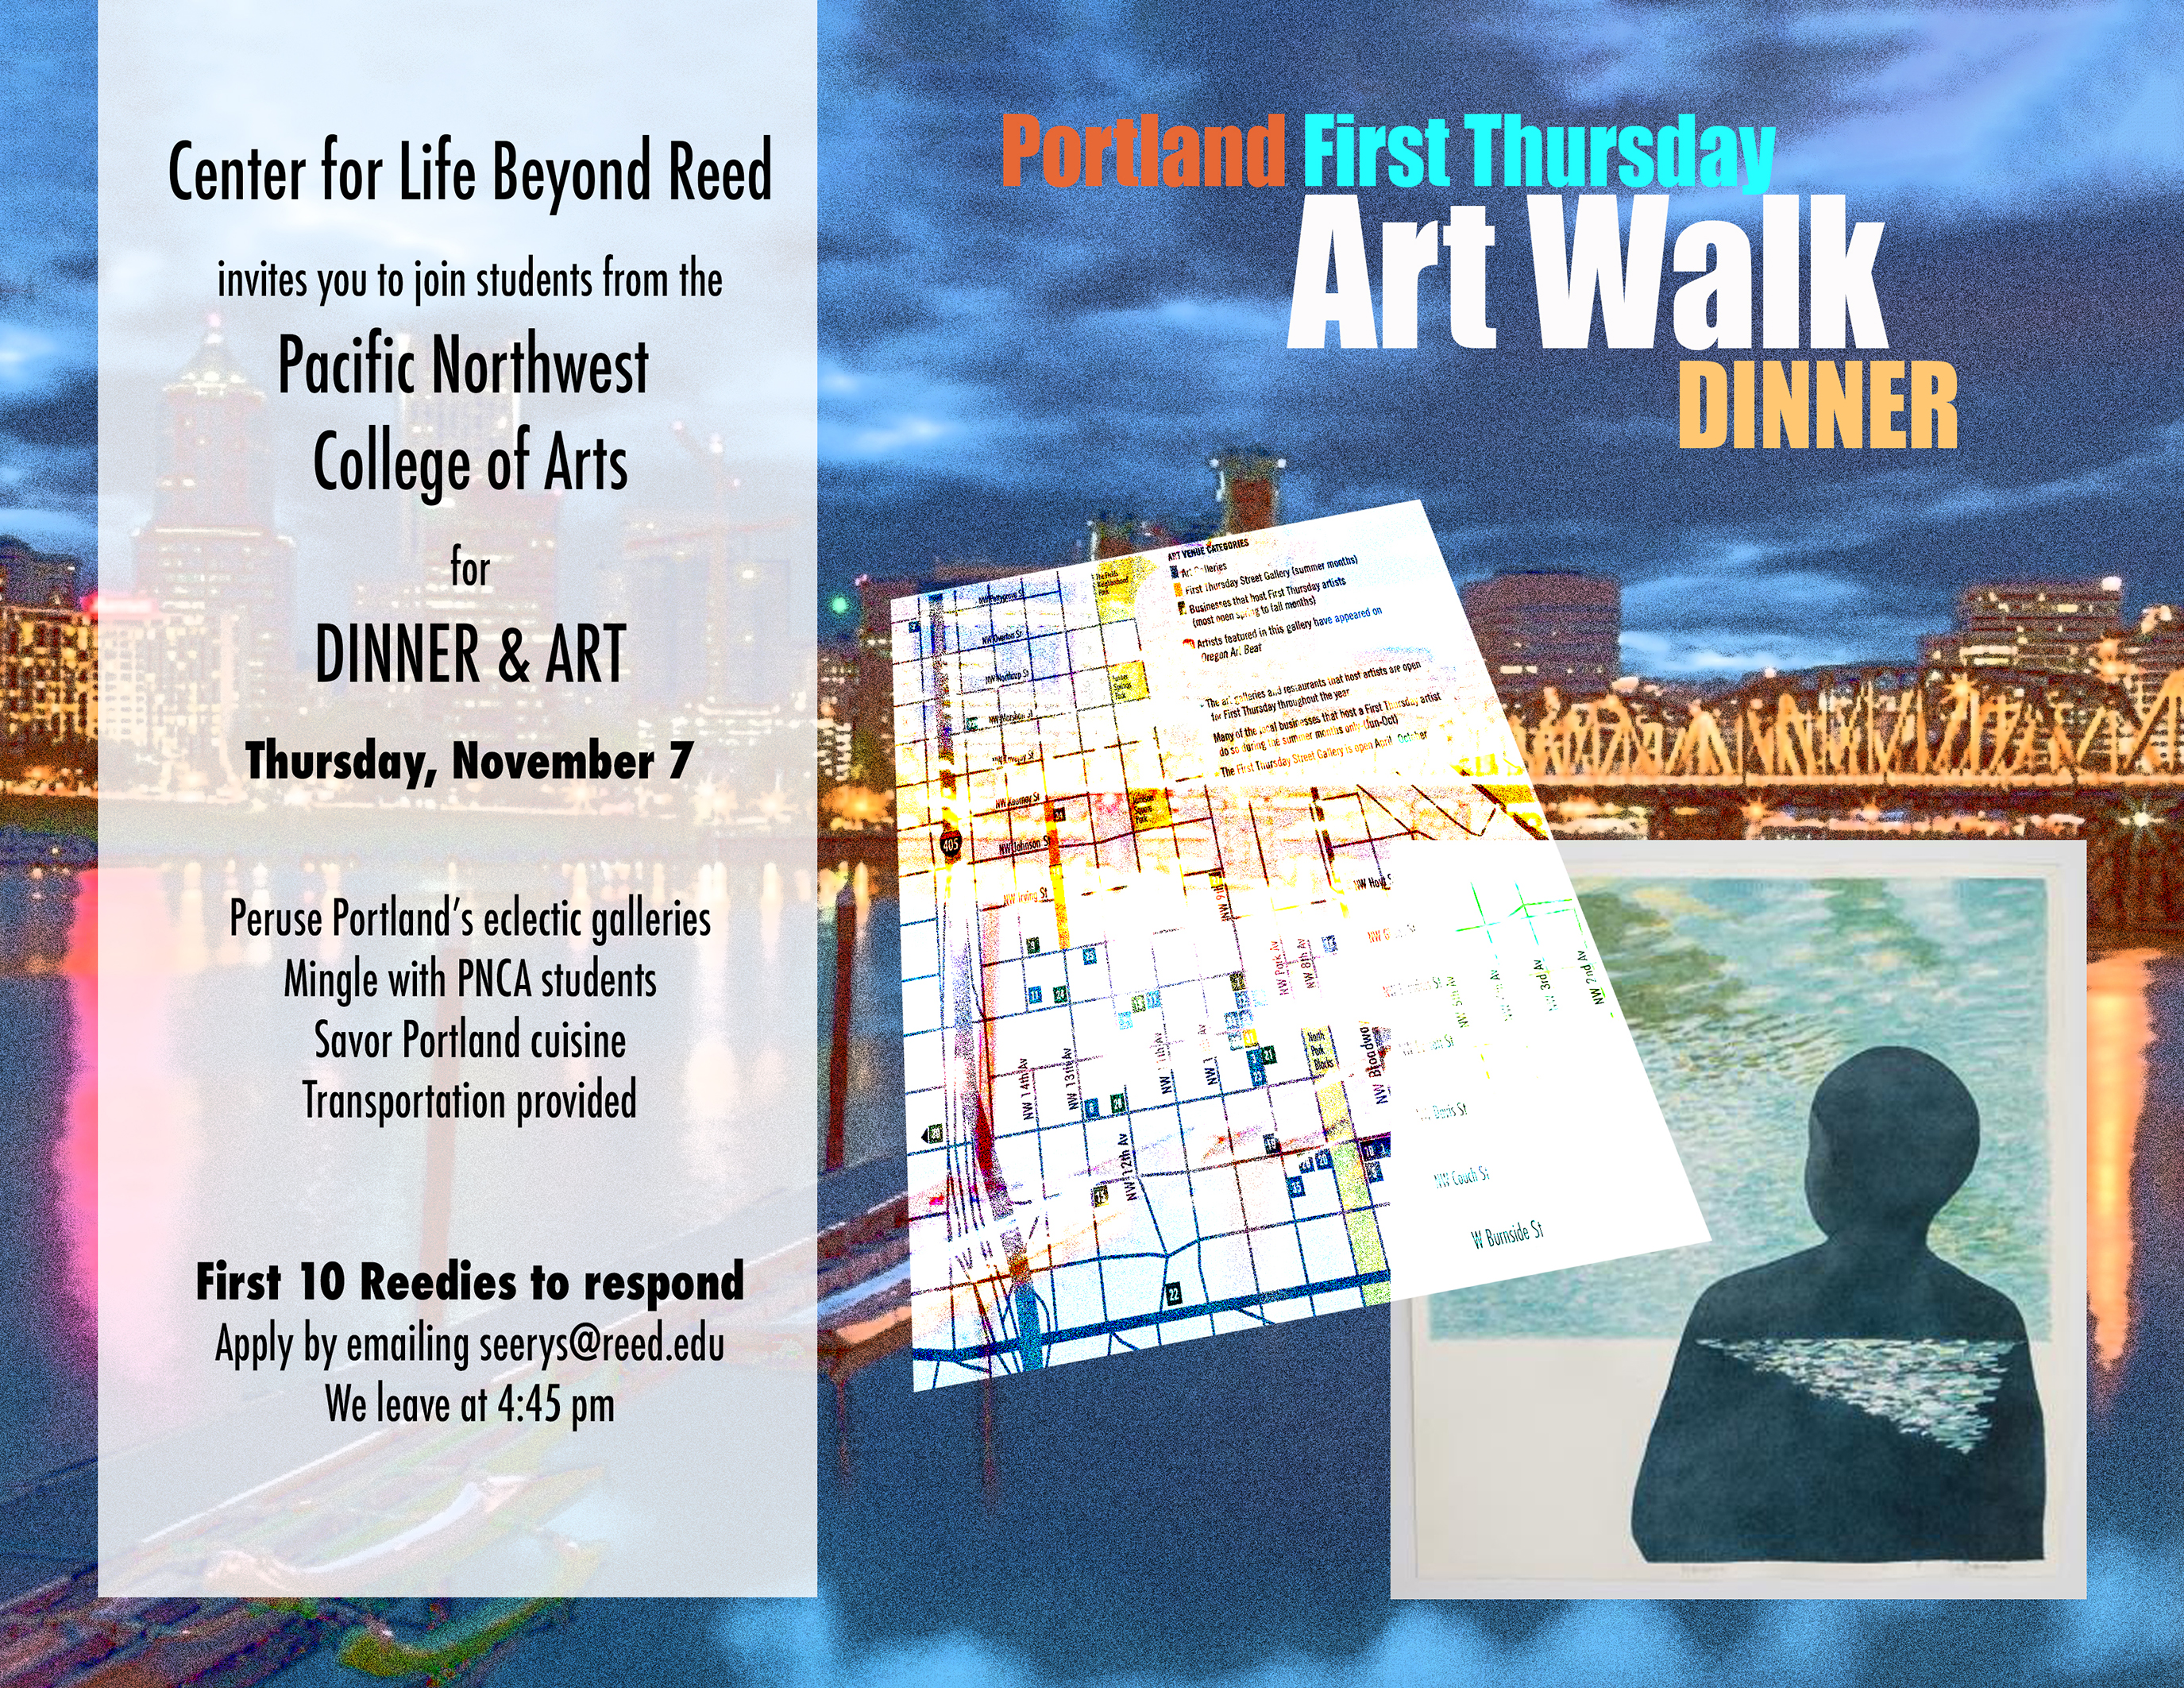 poster for an art walk event